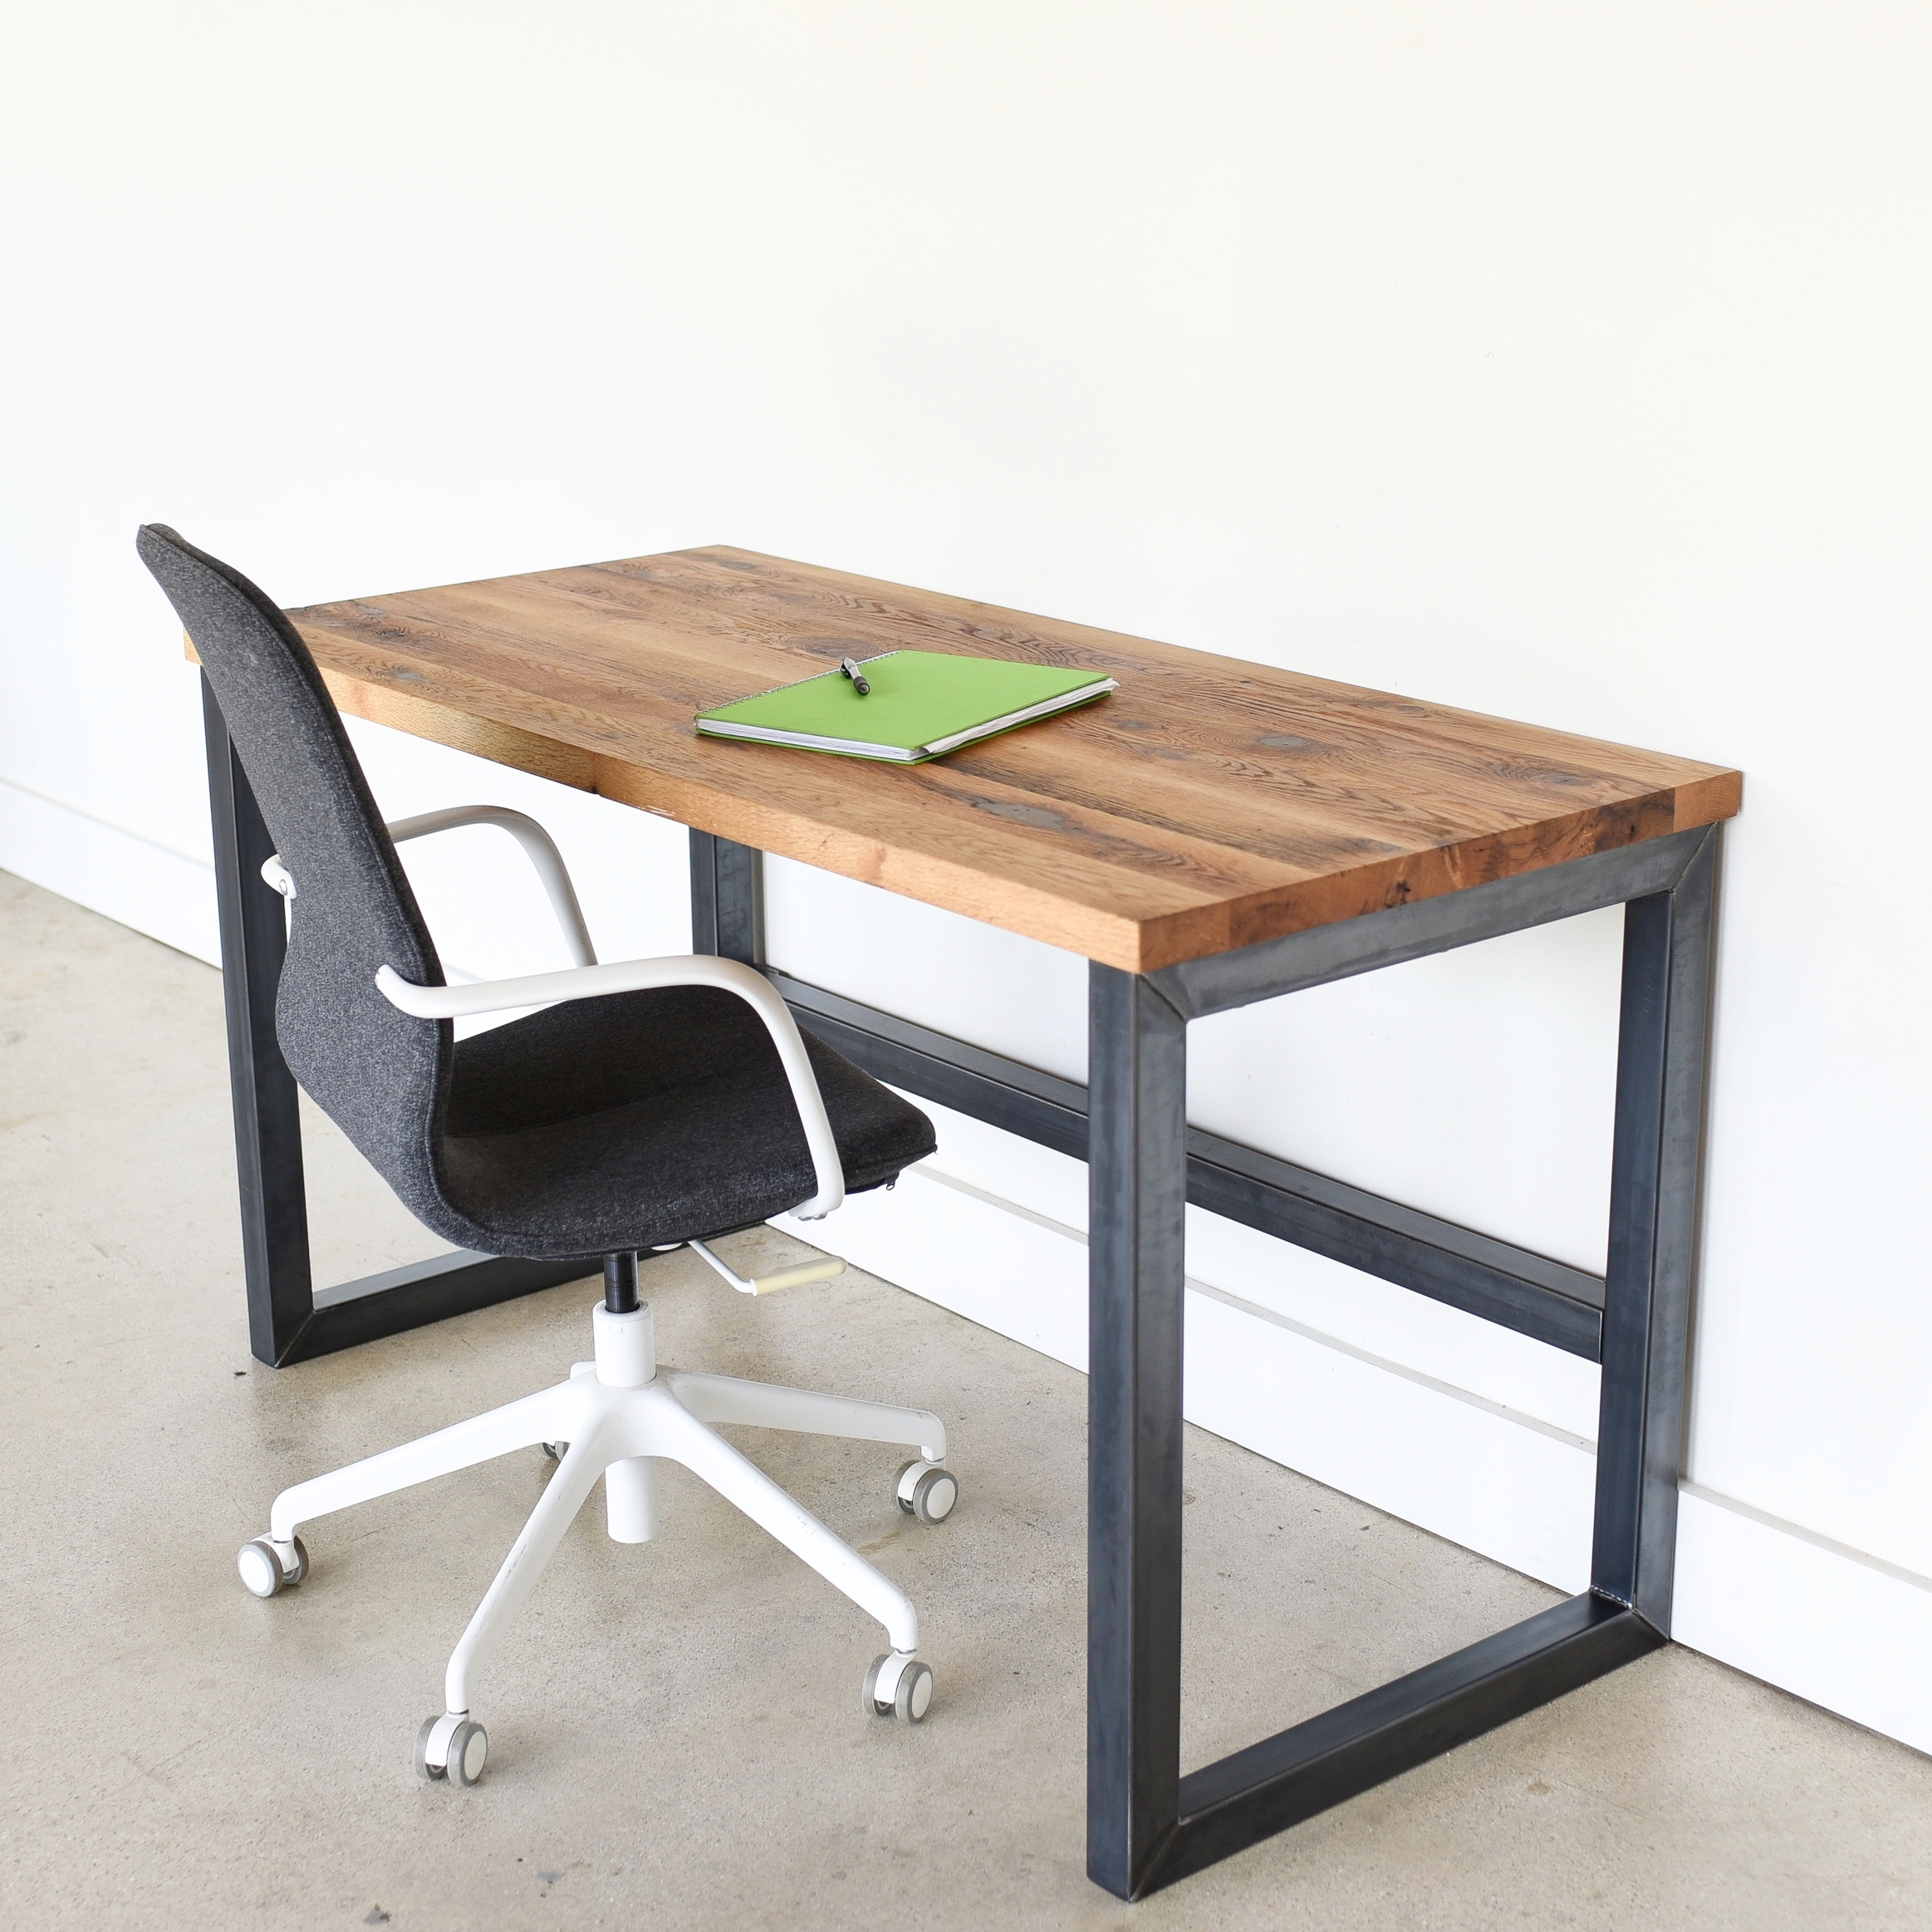 Industrial Reclaimed Wood Desk 2 X 2 Metal Frame What We